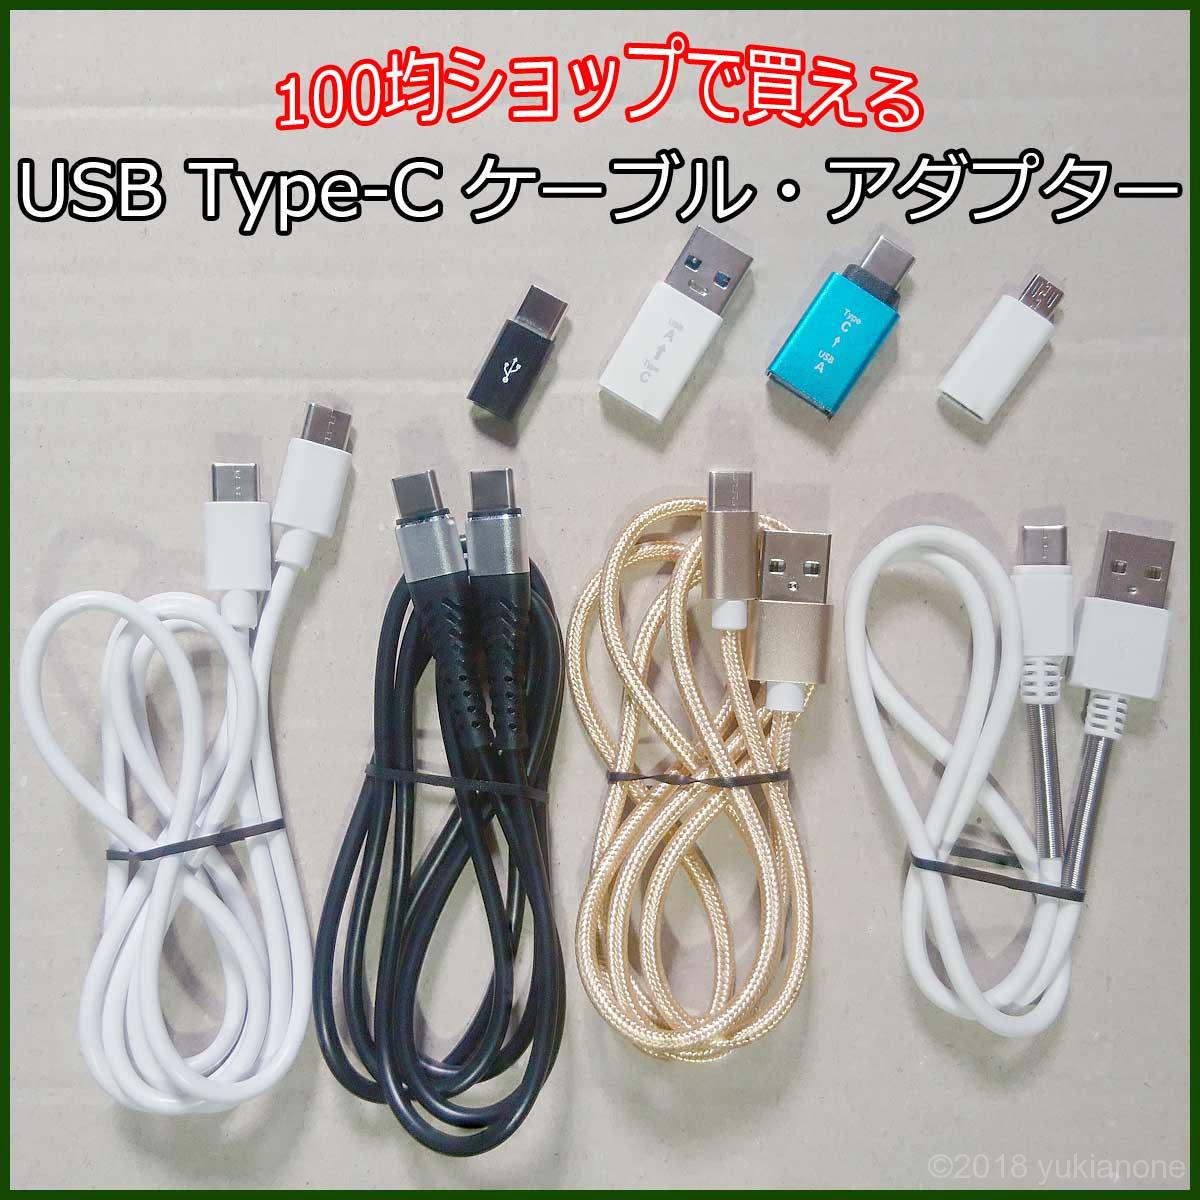 100均 USBケーブル 変換アダプター Type-C